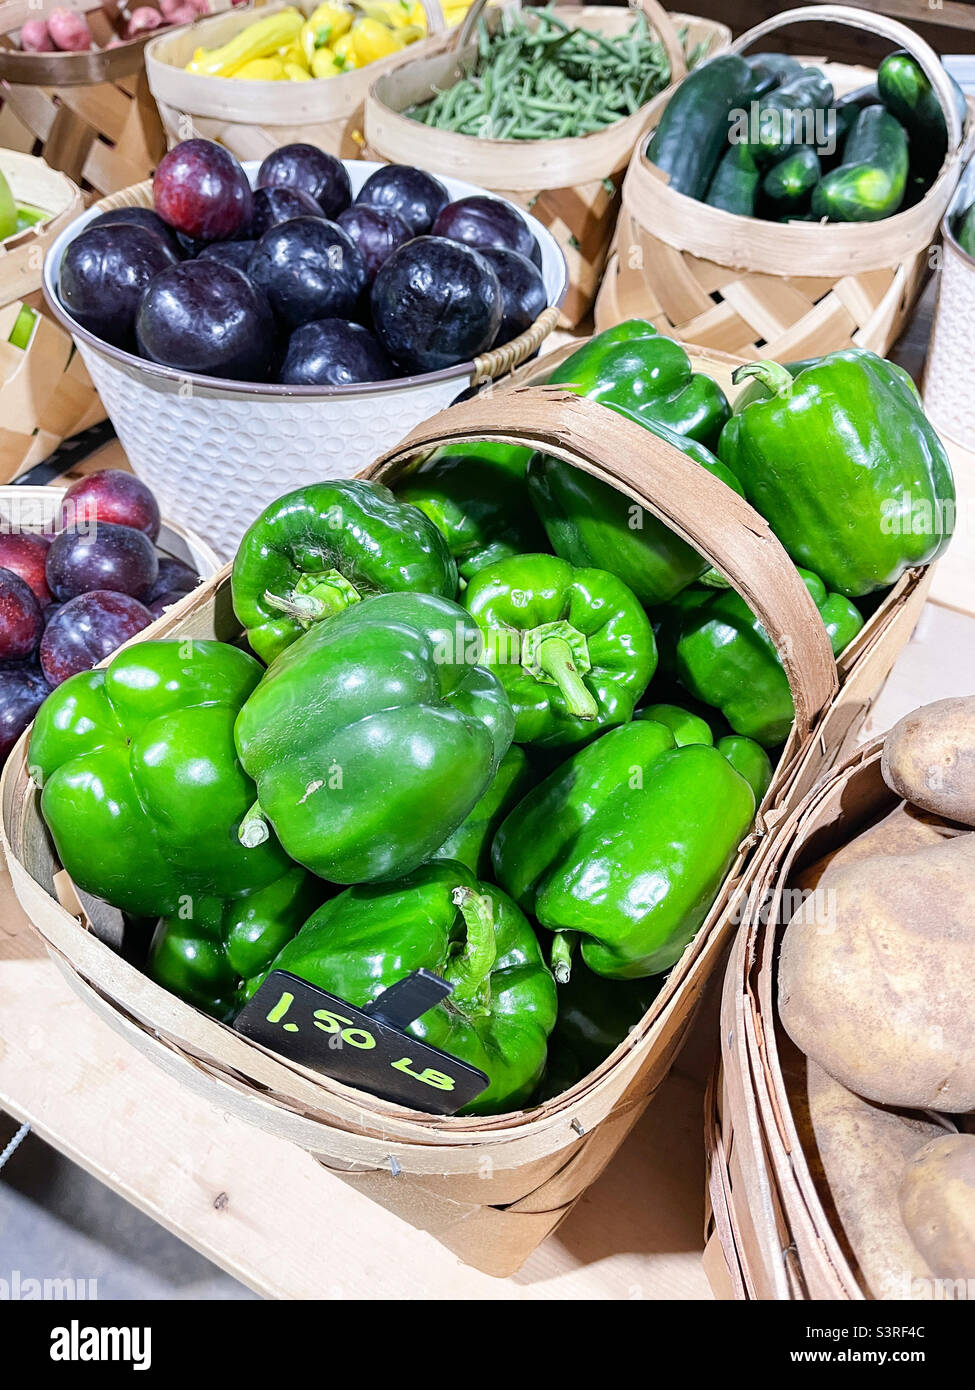 Productos frescos para la venta en un mercado de agricultores. Pimientos verdes y frutas y verduras variadas. Foto de stock